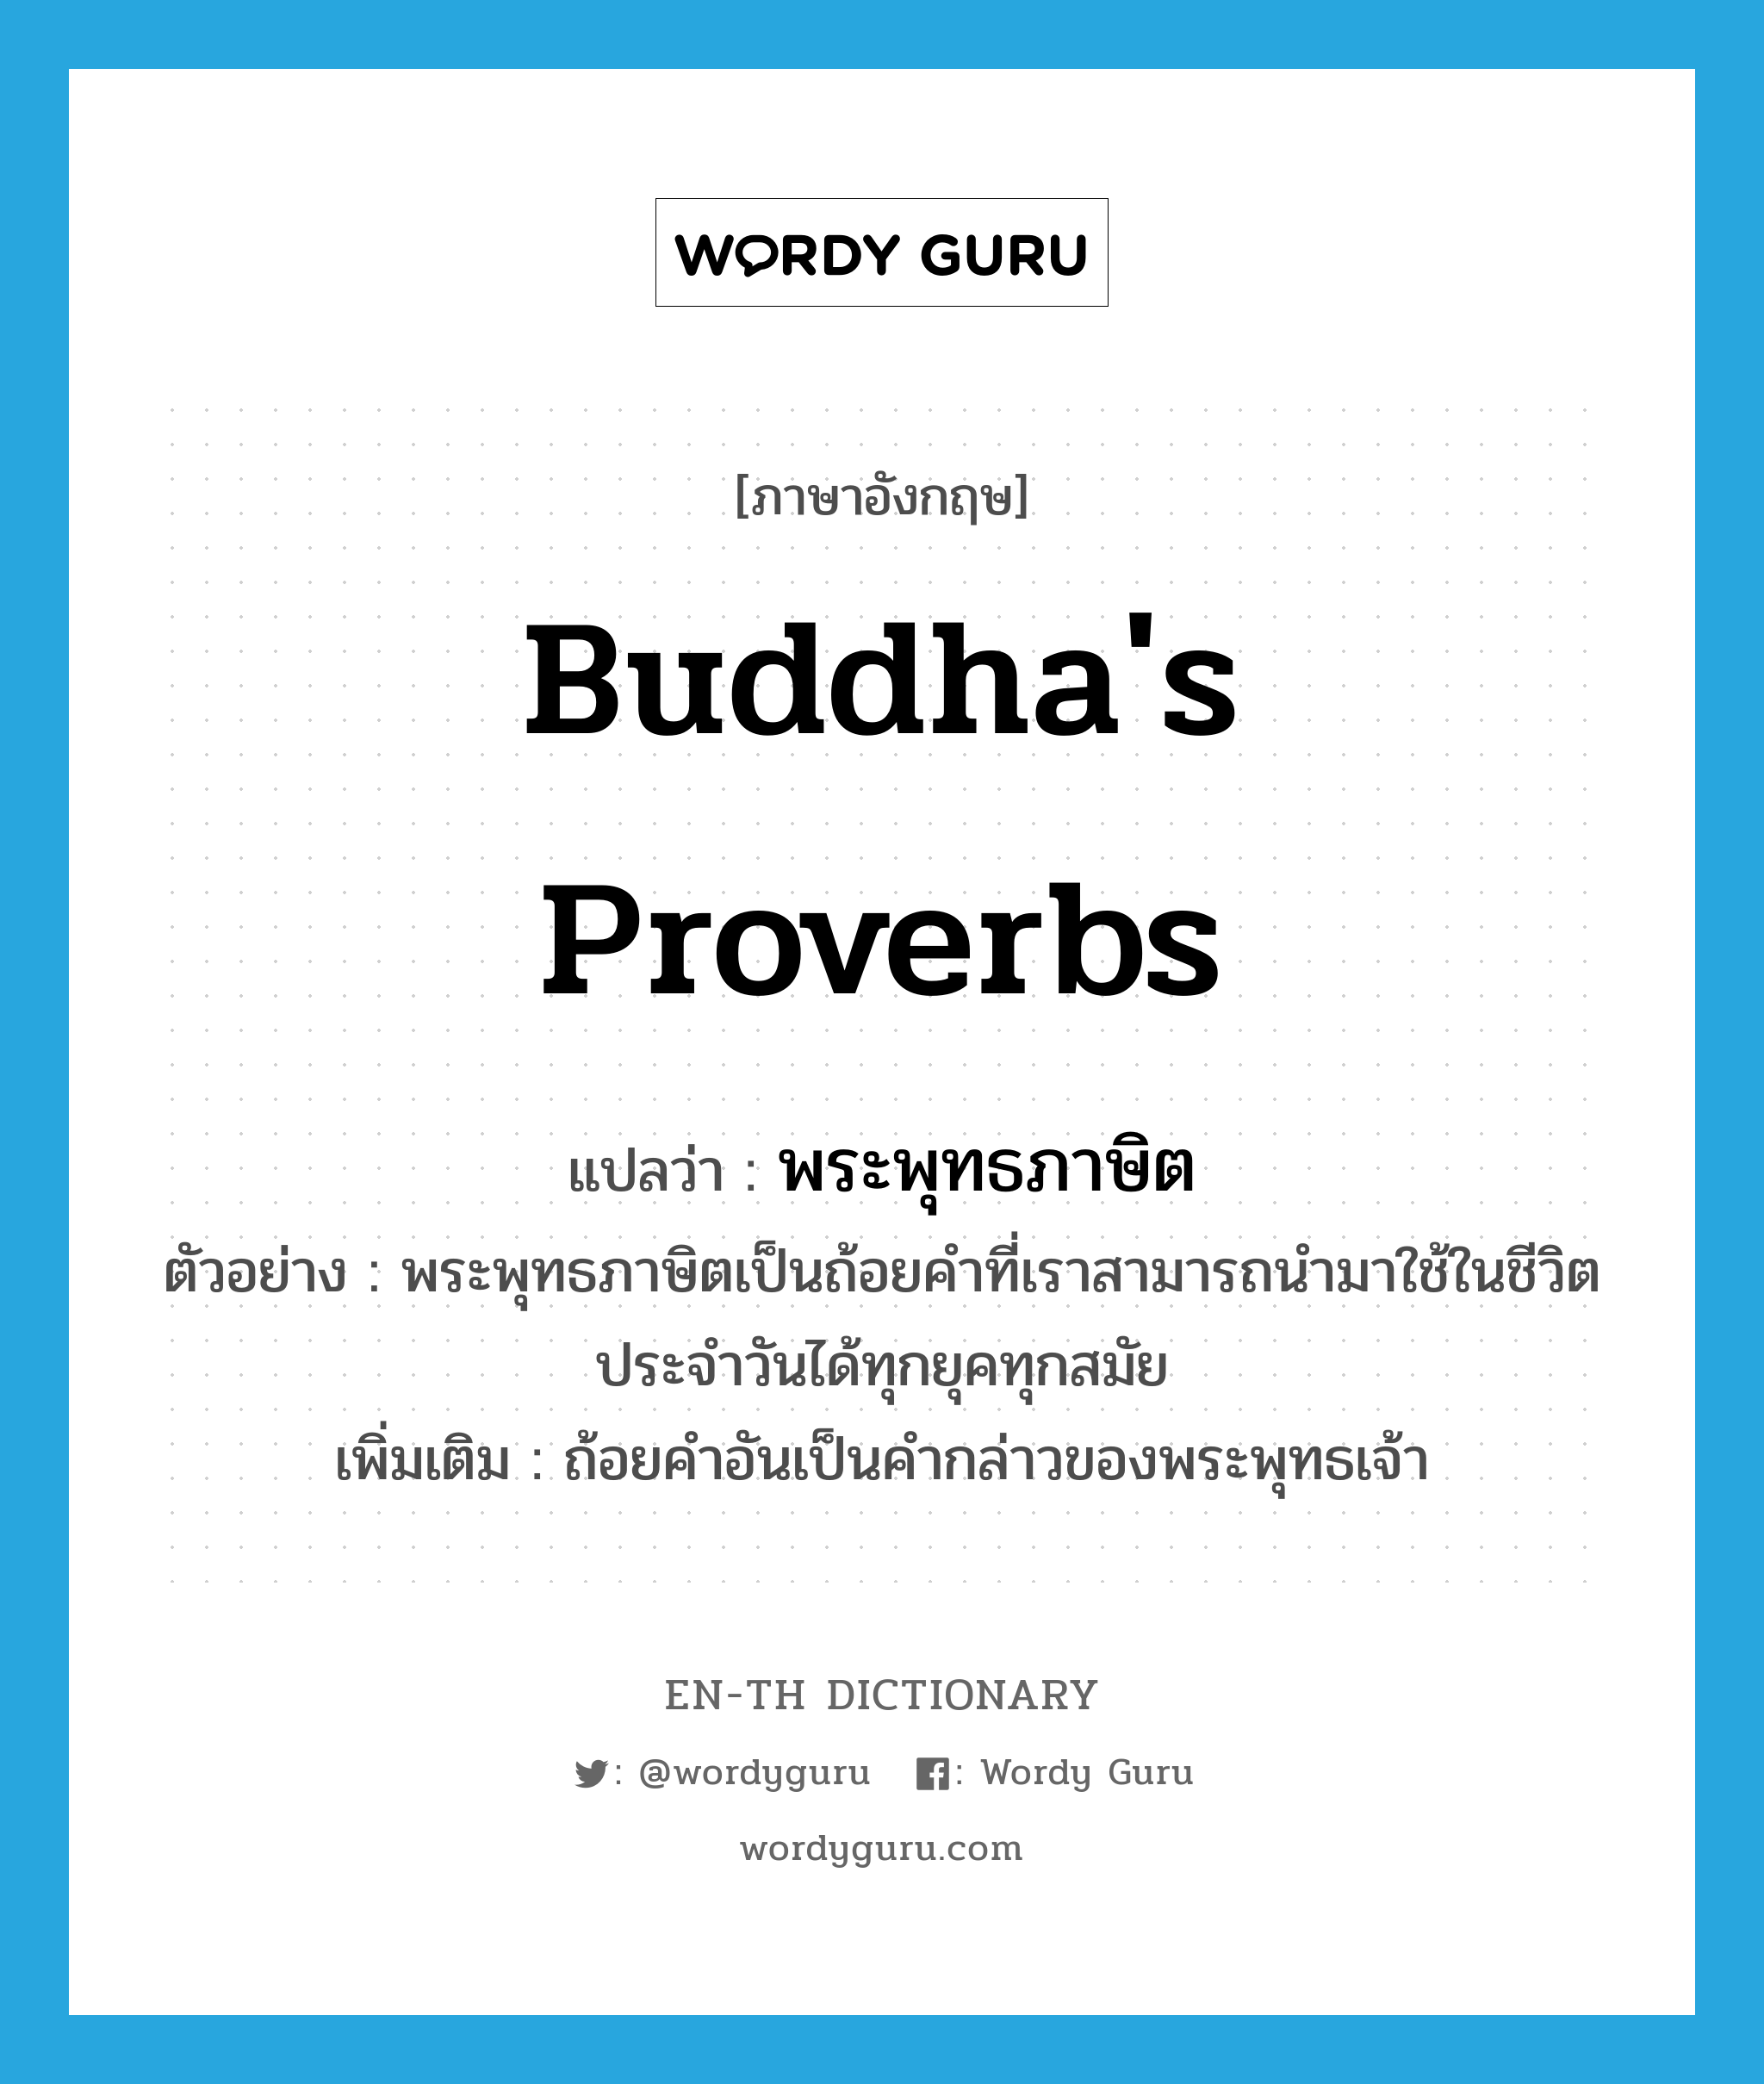 Buddha's proverbs แปลว่า?, คำศัพท์ภาษาอังกฤษ Buddha's proverbs แปลว่า พระพุทธภาษิต ประเภท N ตัวอย่าง พระพุทธภาษิตเป็นถ้อยคำที่เราสามารถนำมาใช้ในชีวิตประจำวันได้ทุกยุคทุกสมัย เพิ่มเติม ถ้อยคำอันเป็นคำกล่าวของพระพุทธเจ้า หมวด N